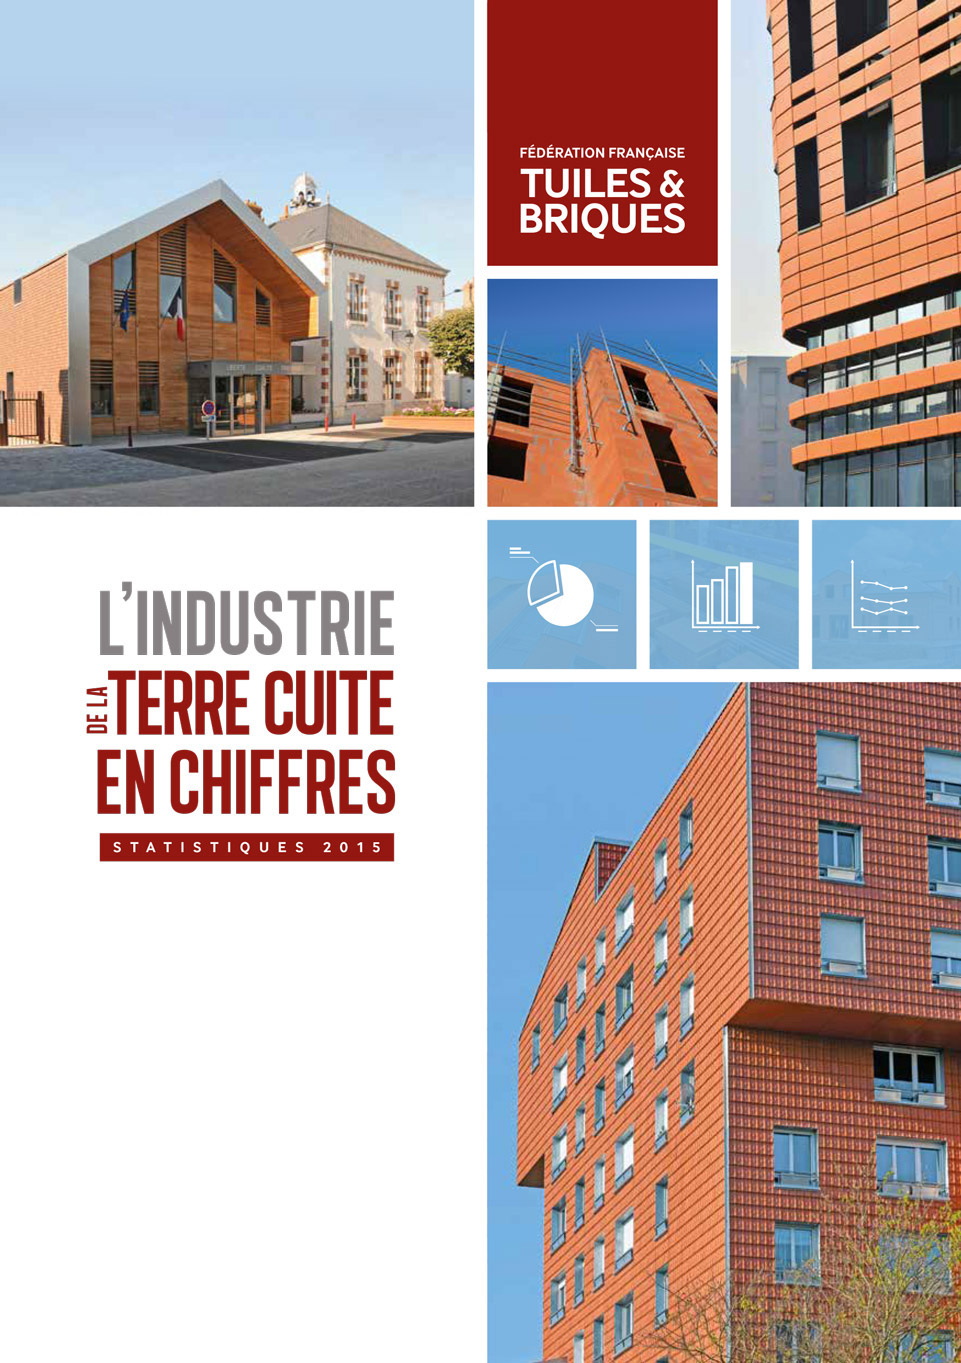 Statistiques 2015 de la Fédération Française des Tuiles & Briques